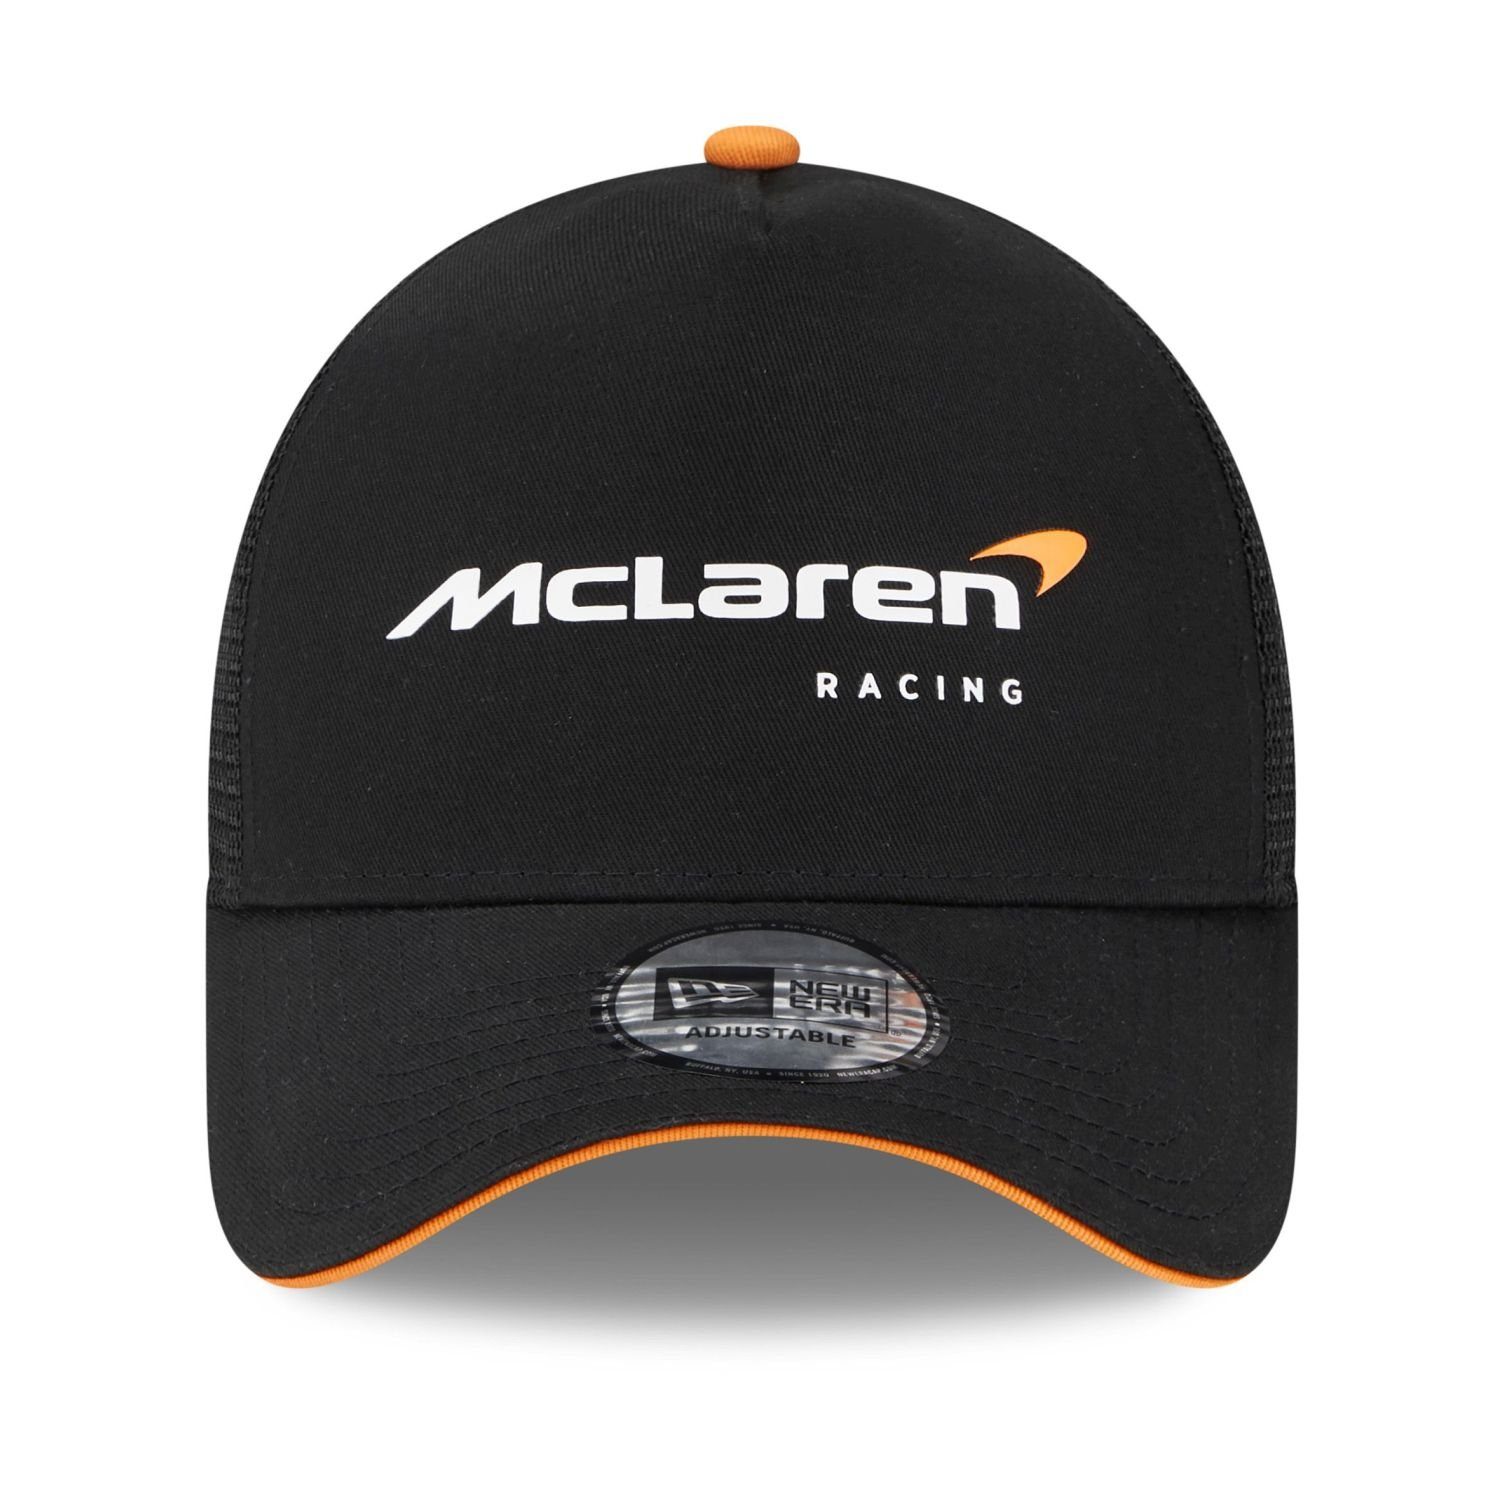 New Trucker F1 Cap McLaren AFrame Era Trucker